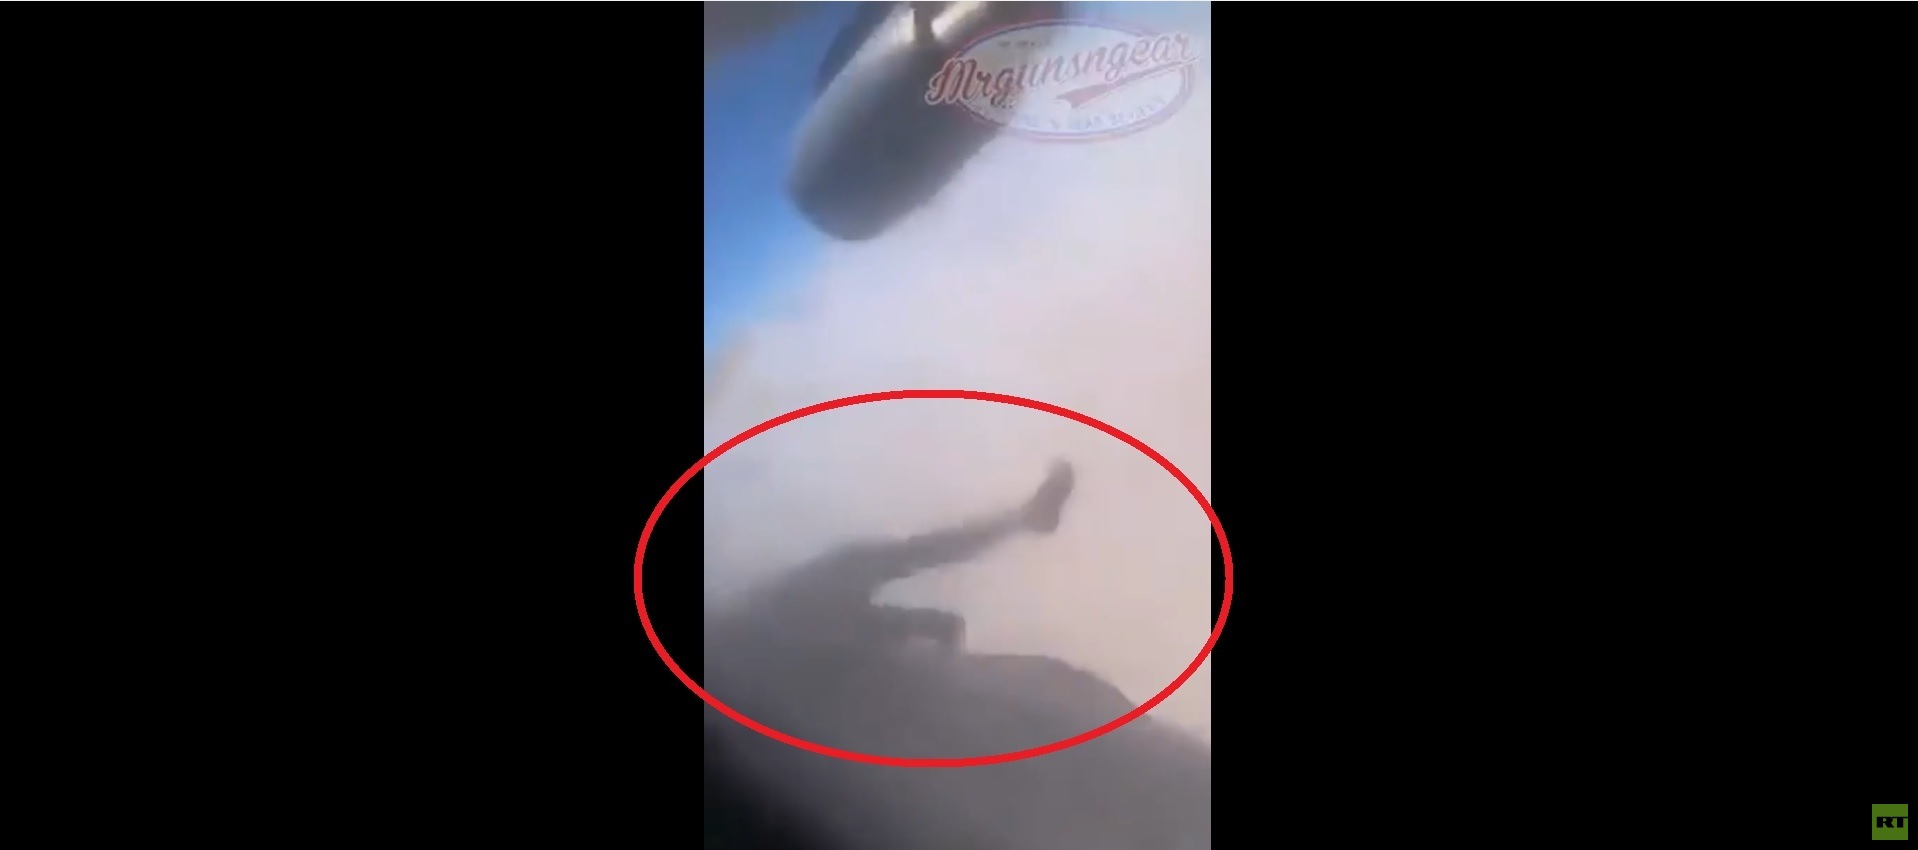 متداول.. فيديو جديد من داخل الطائرة لشخص يتدلى قبل السقوط!